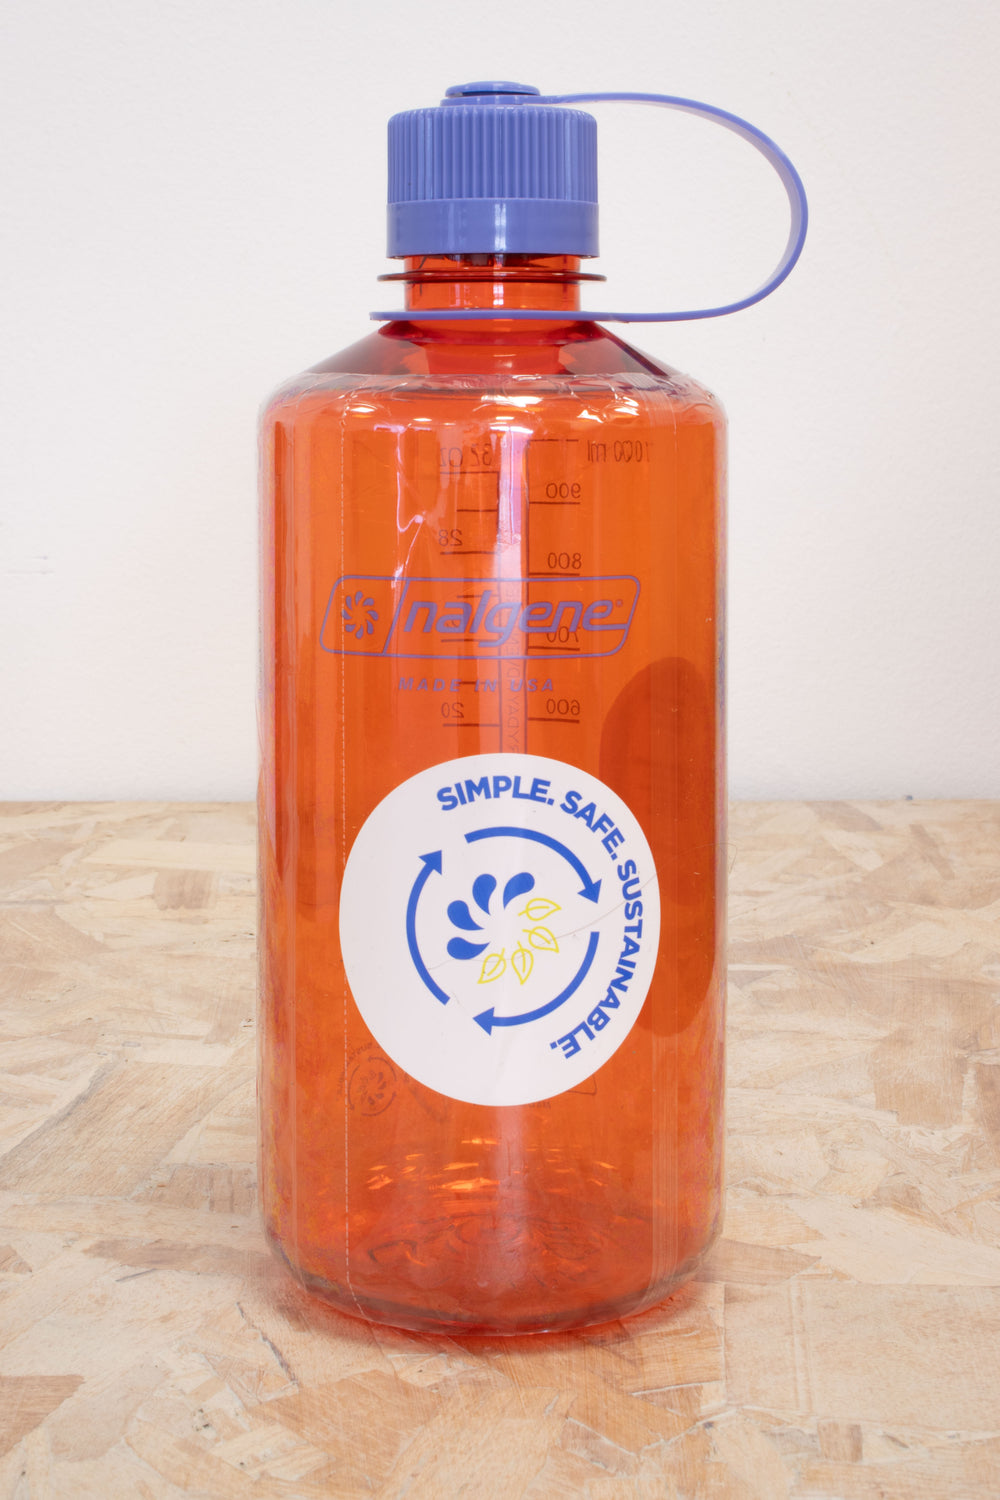 Nalgene - Sustain 1L Narrow Mouth Water Bottle